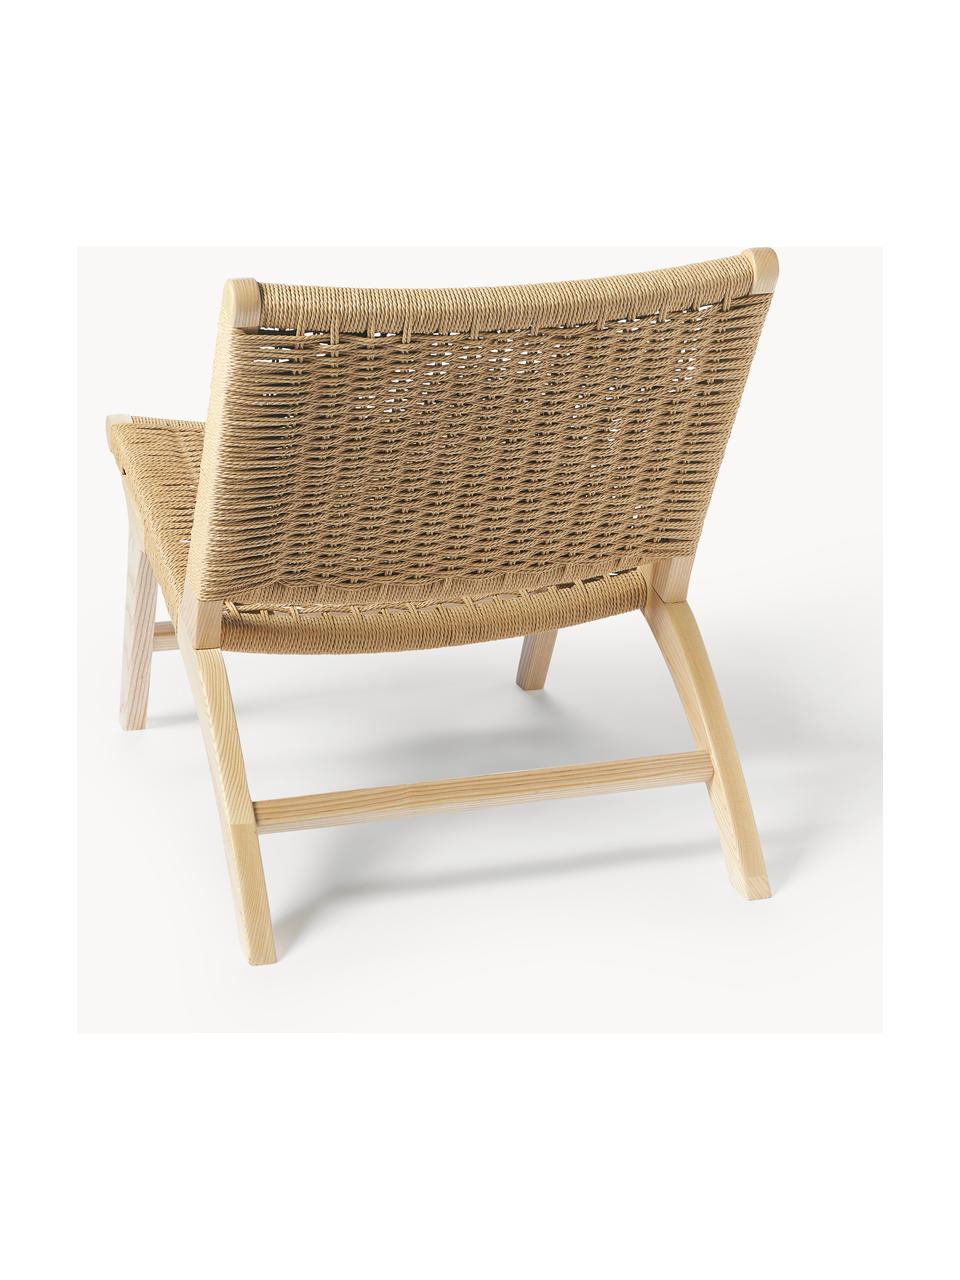 Chaise en bois de frêne tressage en rotin Ira, Bois de frêne, rotin, larg. 58 x haut. 69 cm